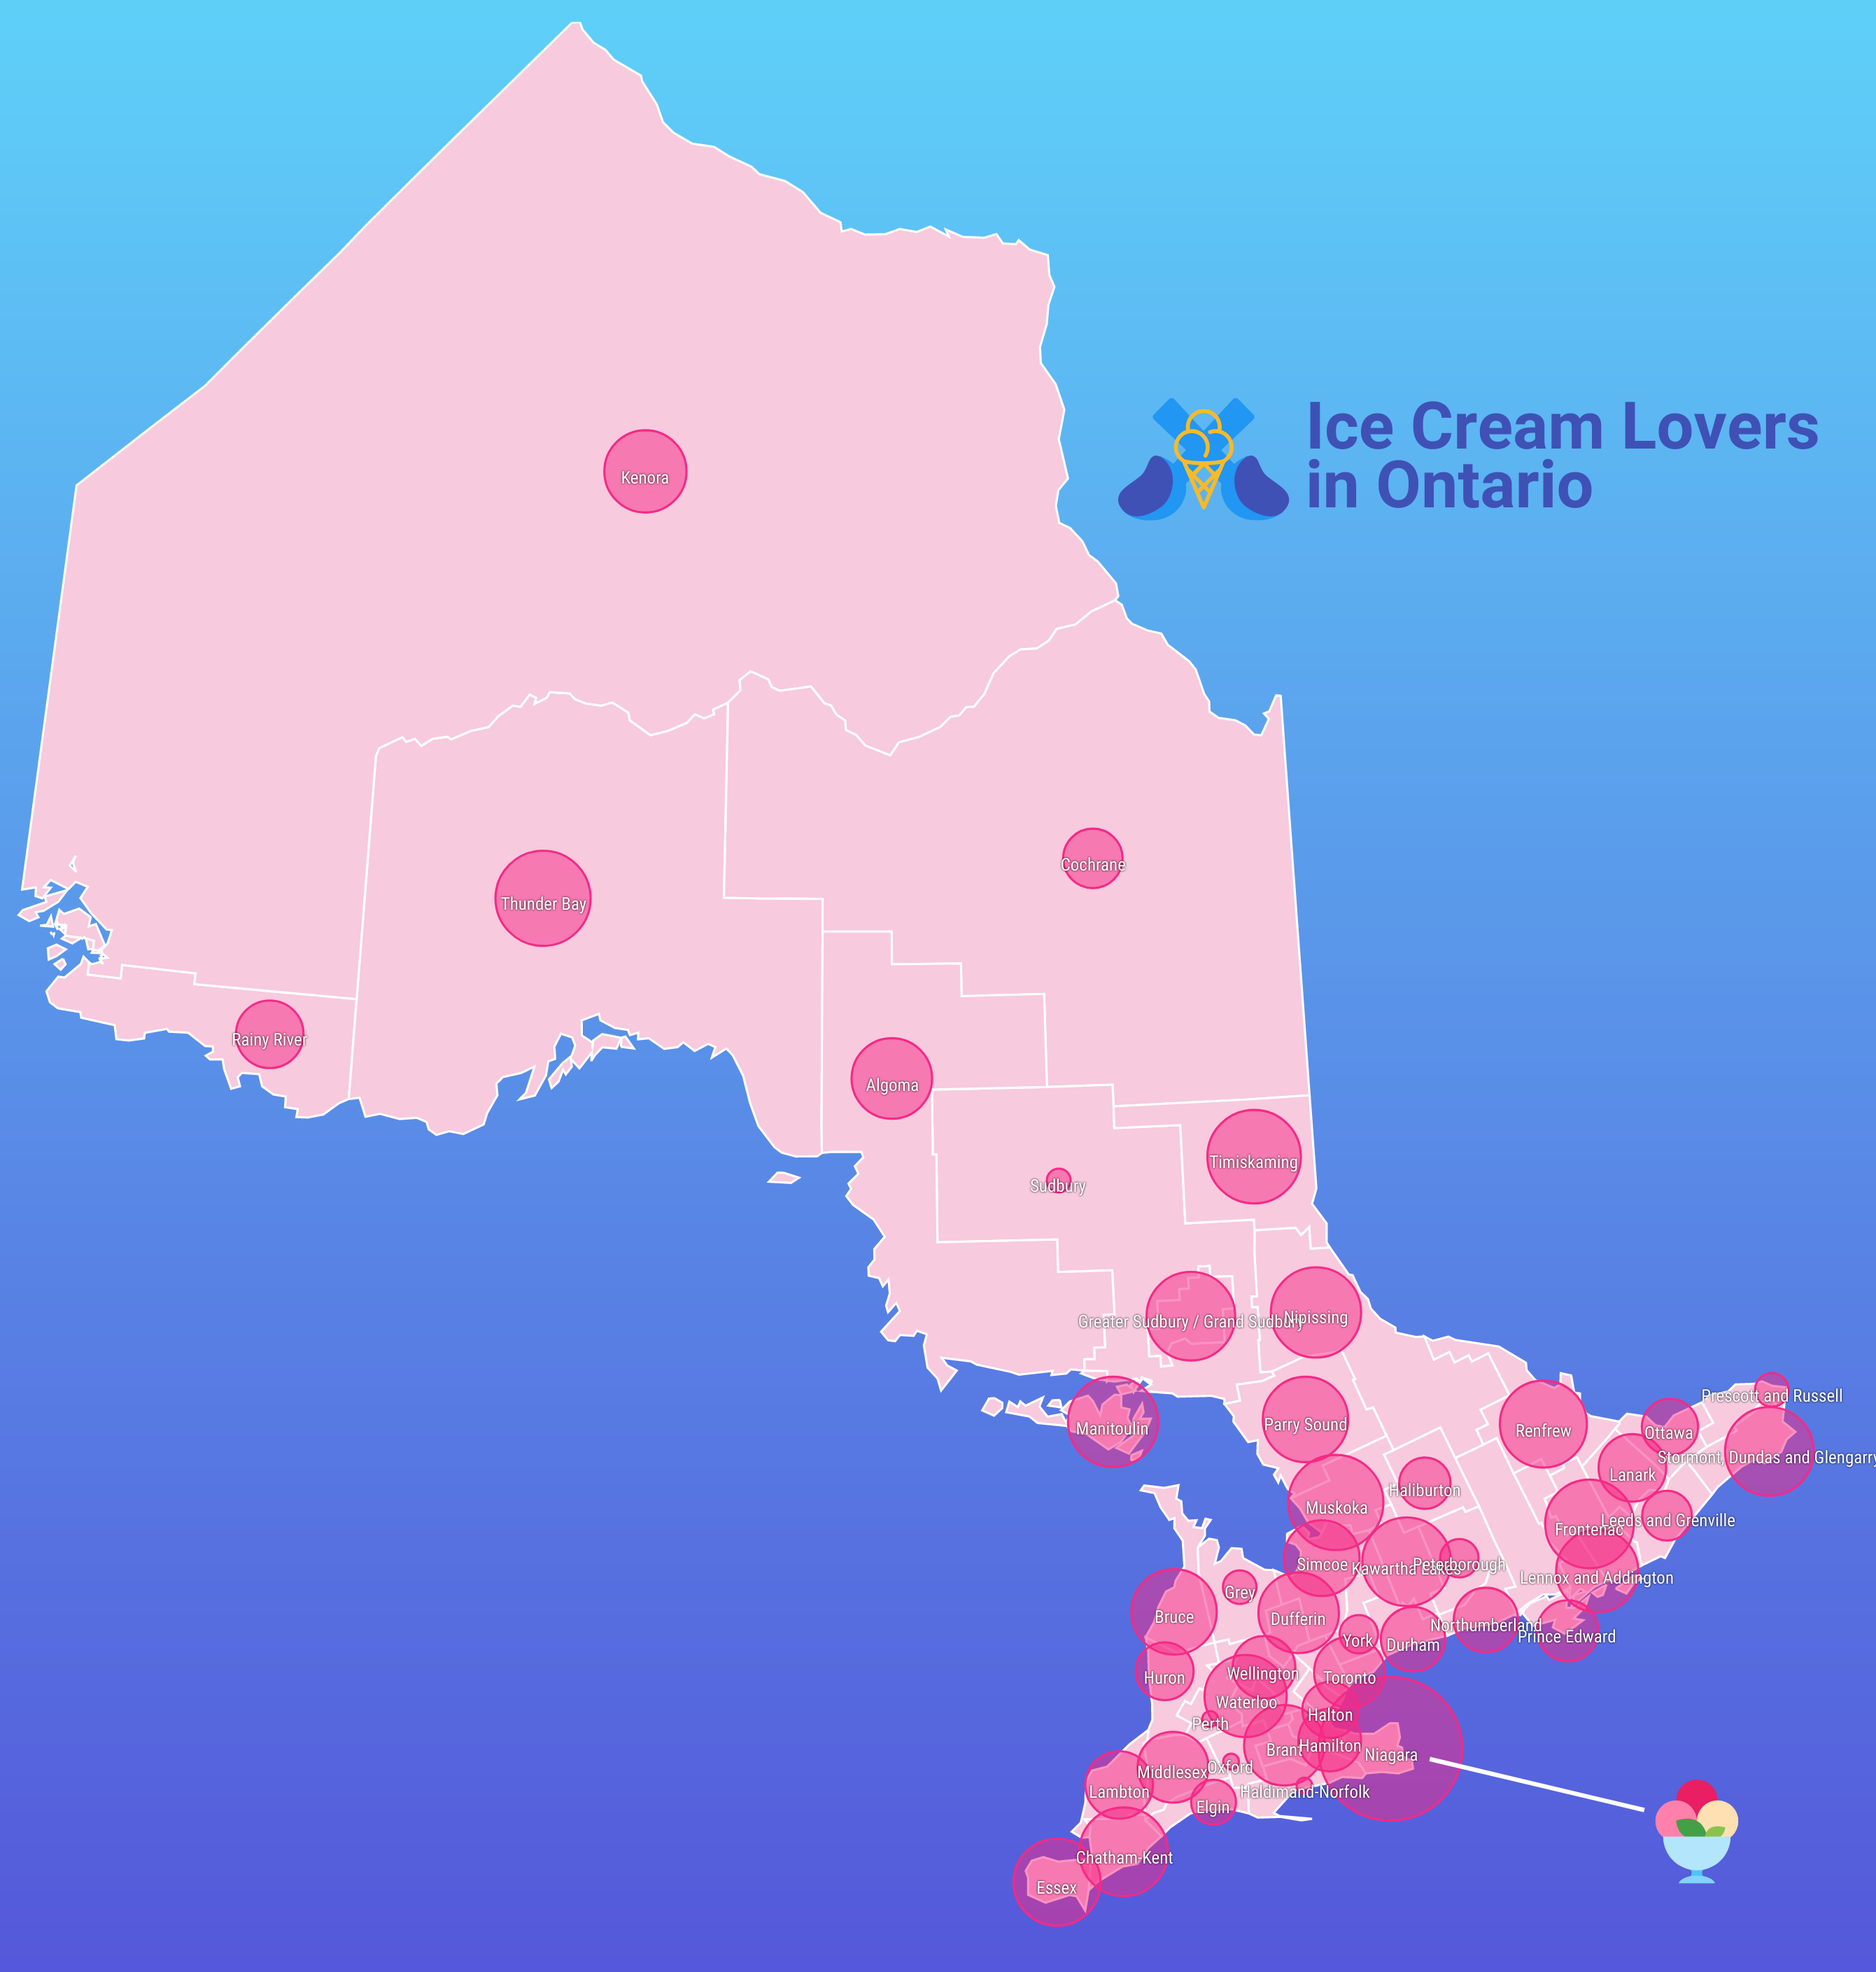 Um mapa de bolhas de Ontário intitulado 'Ice Cream Lovers in Ontario'.  Os nomes das regiões aparecem sobre cada uma delas em texto branco contornado em preto.  Há uma linha branca indicando a região coberta pela maior bolha (Niagara), com um ícone de sundae ao lado.  A província é rosa claro e as regiões são cobertas com bolhas rosa escuro de tamanhos variados.  O fundo é um gradiente de azul claro a escuro.